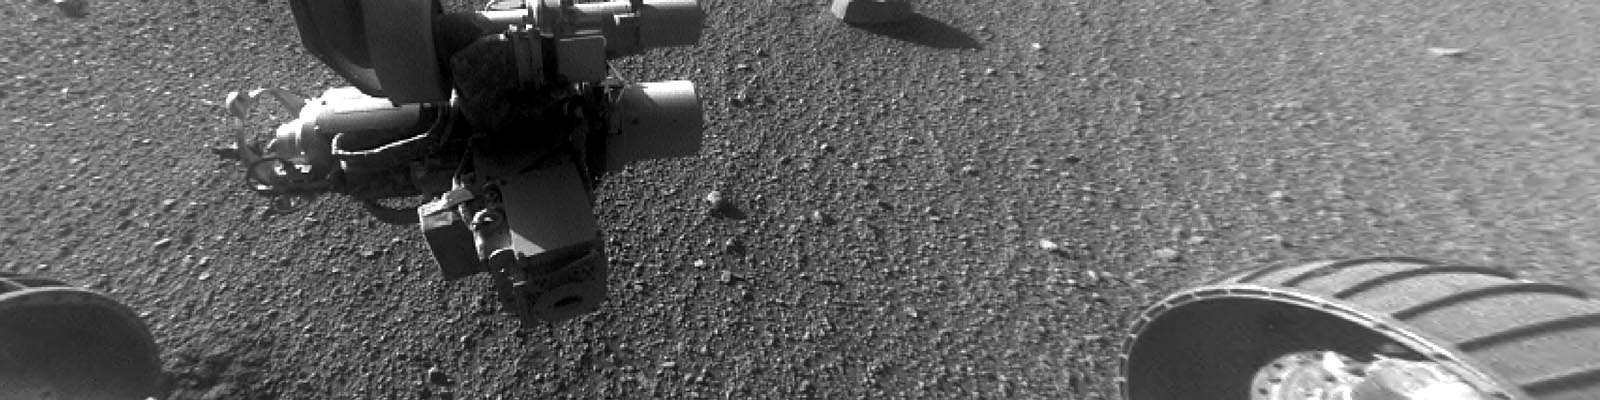 Rover Opportunity sur la planète Mars